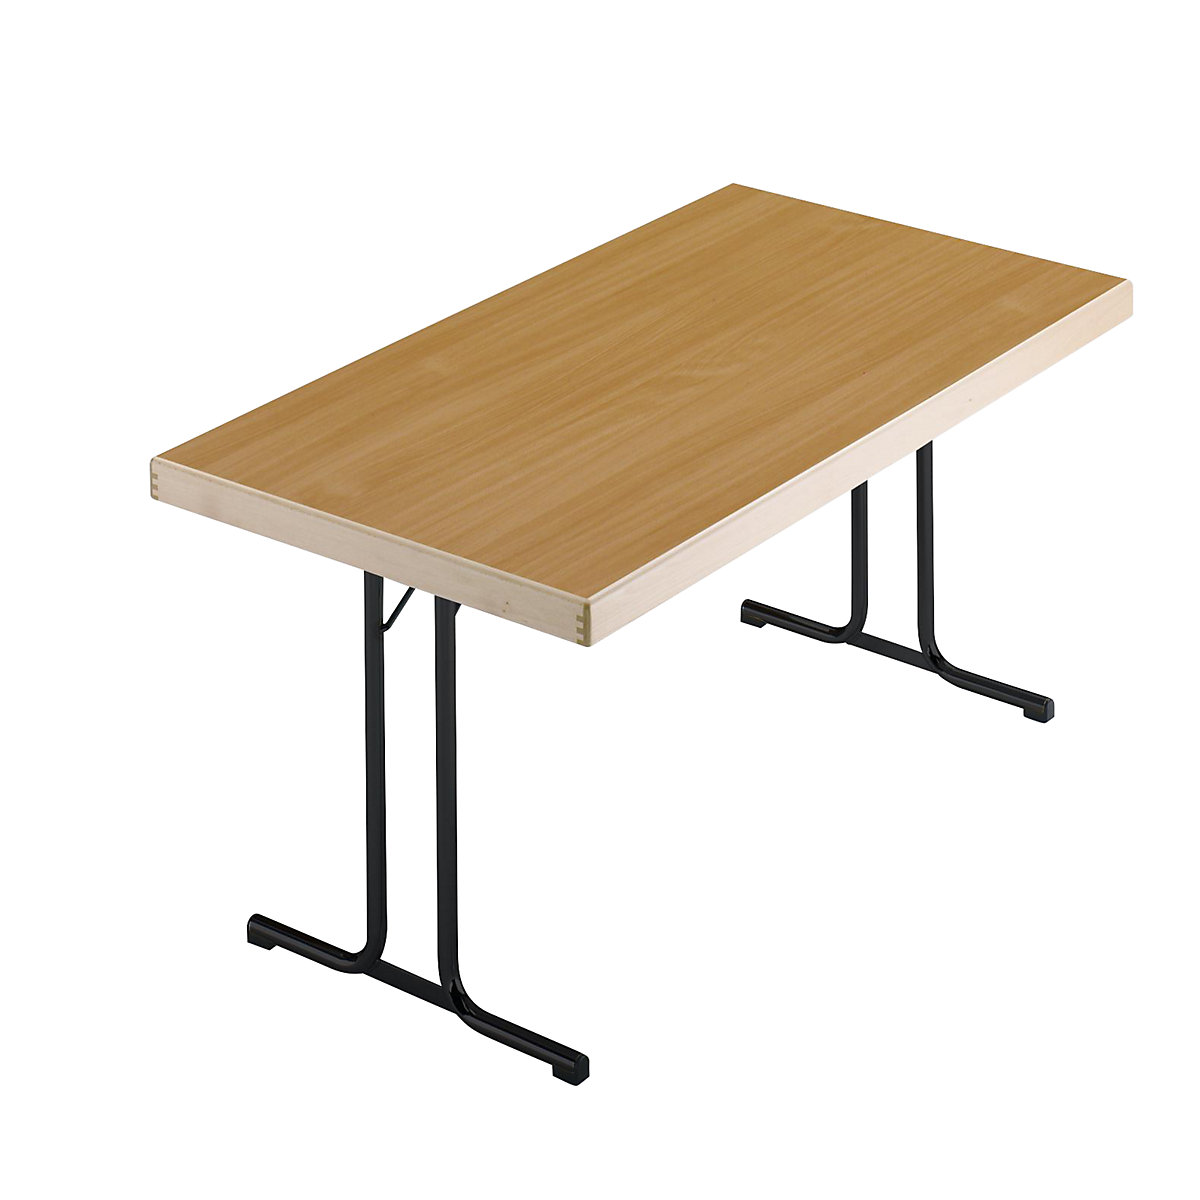 Sklopivi stol, postolje s dvostrukim nogama u obliku slova T, 1200 x 800 mm, postolje u antracit boji, ploča u imitaciji bukve-7